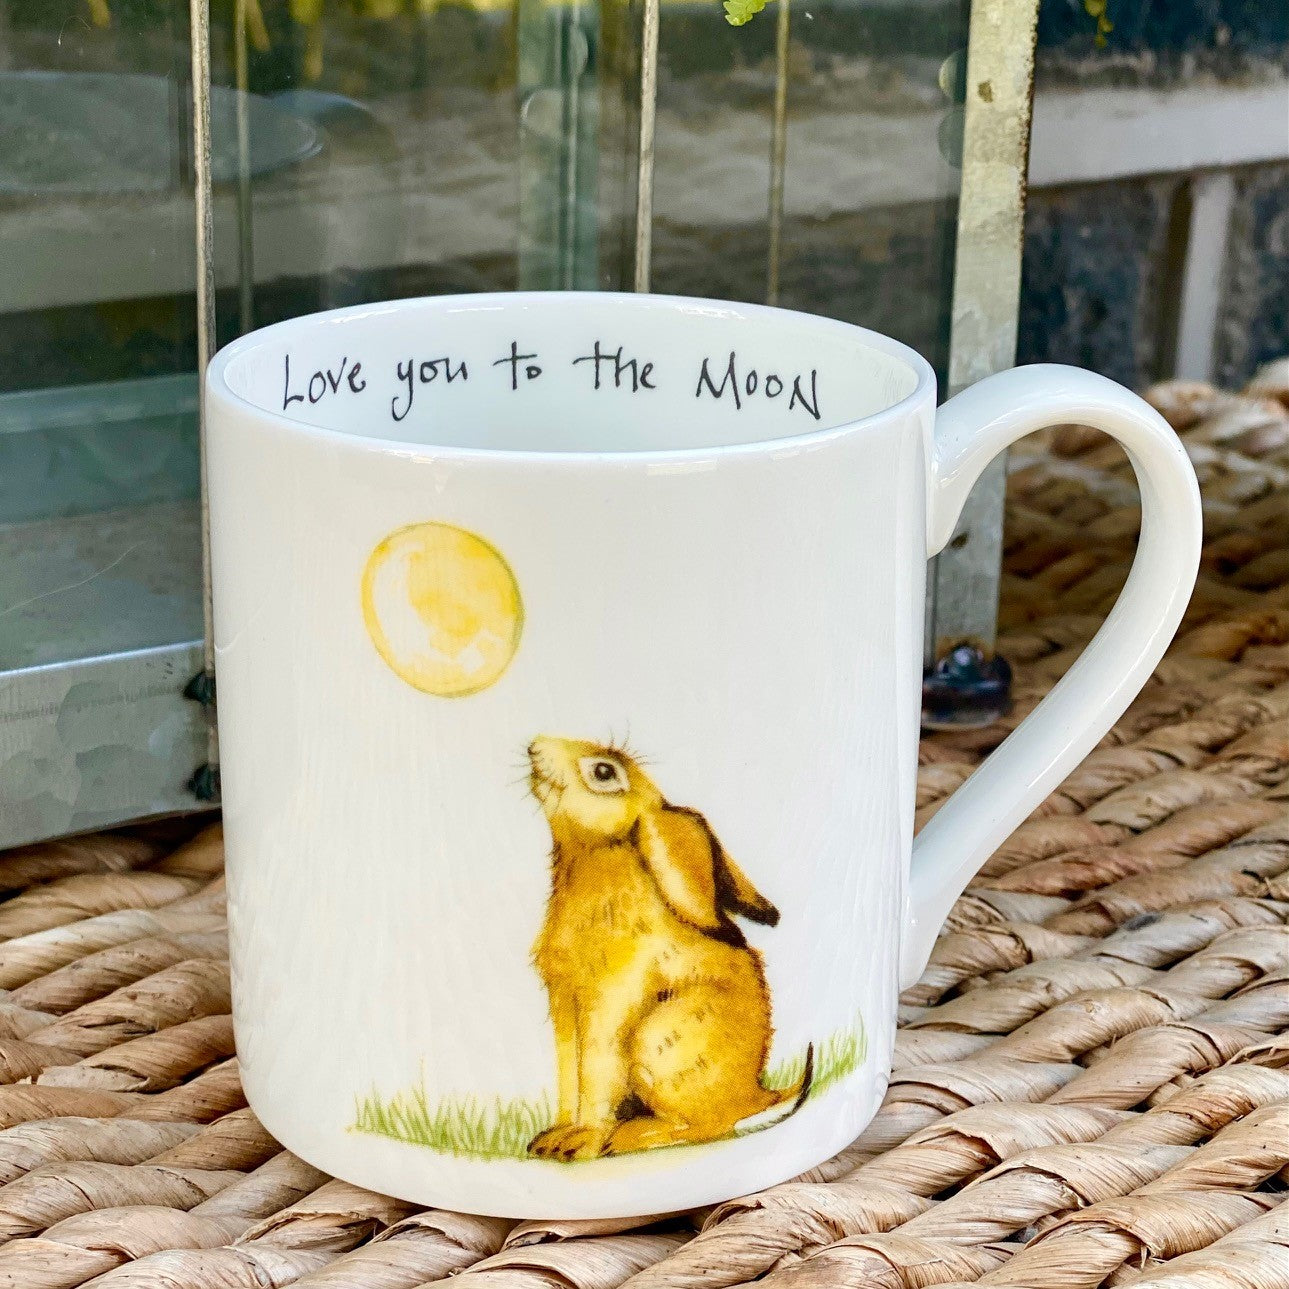 "Love you to the Moon" Mug